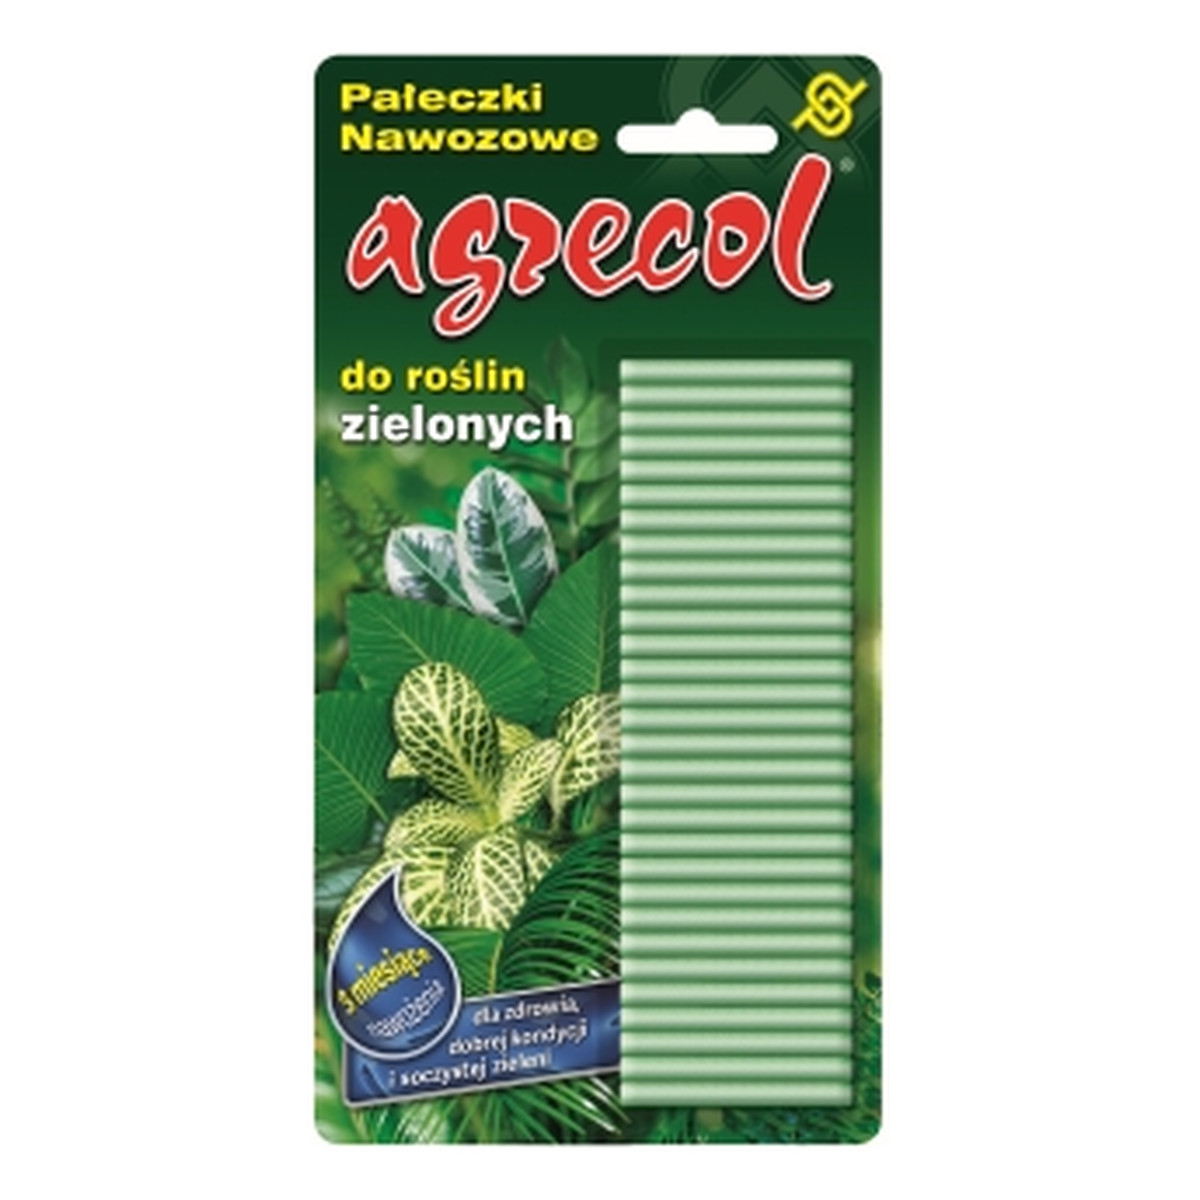 Agrecol Pałeczki nawozowe do roślin zielonych z witaminą C 30SZT